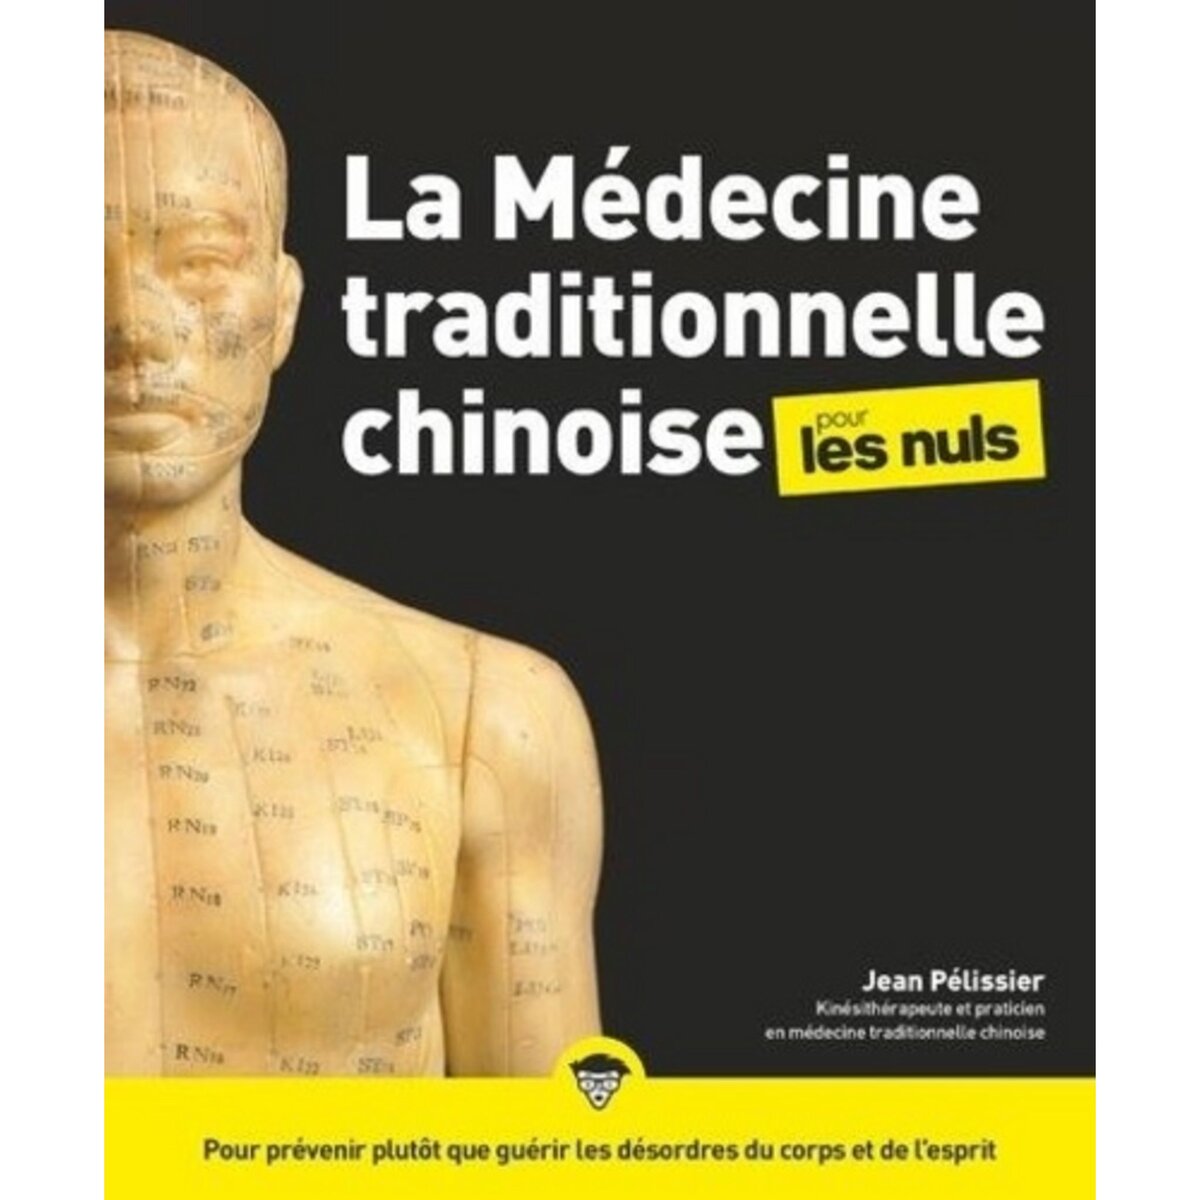  LA MEDECINE TRADITIONNELLE CHINOISE POUR LES NULS, Pélissier Jean